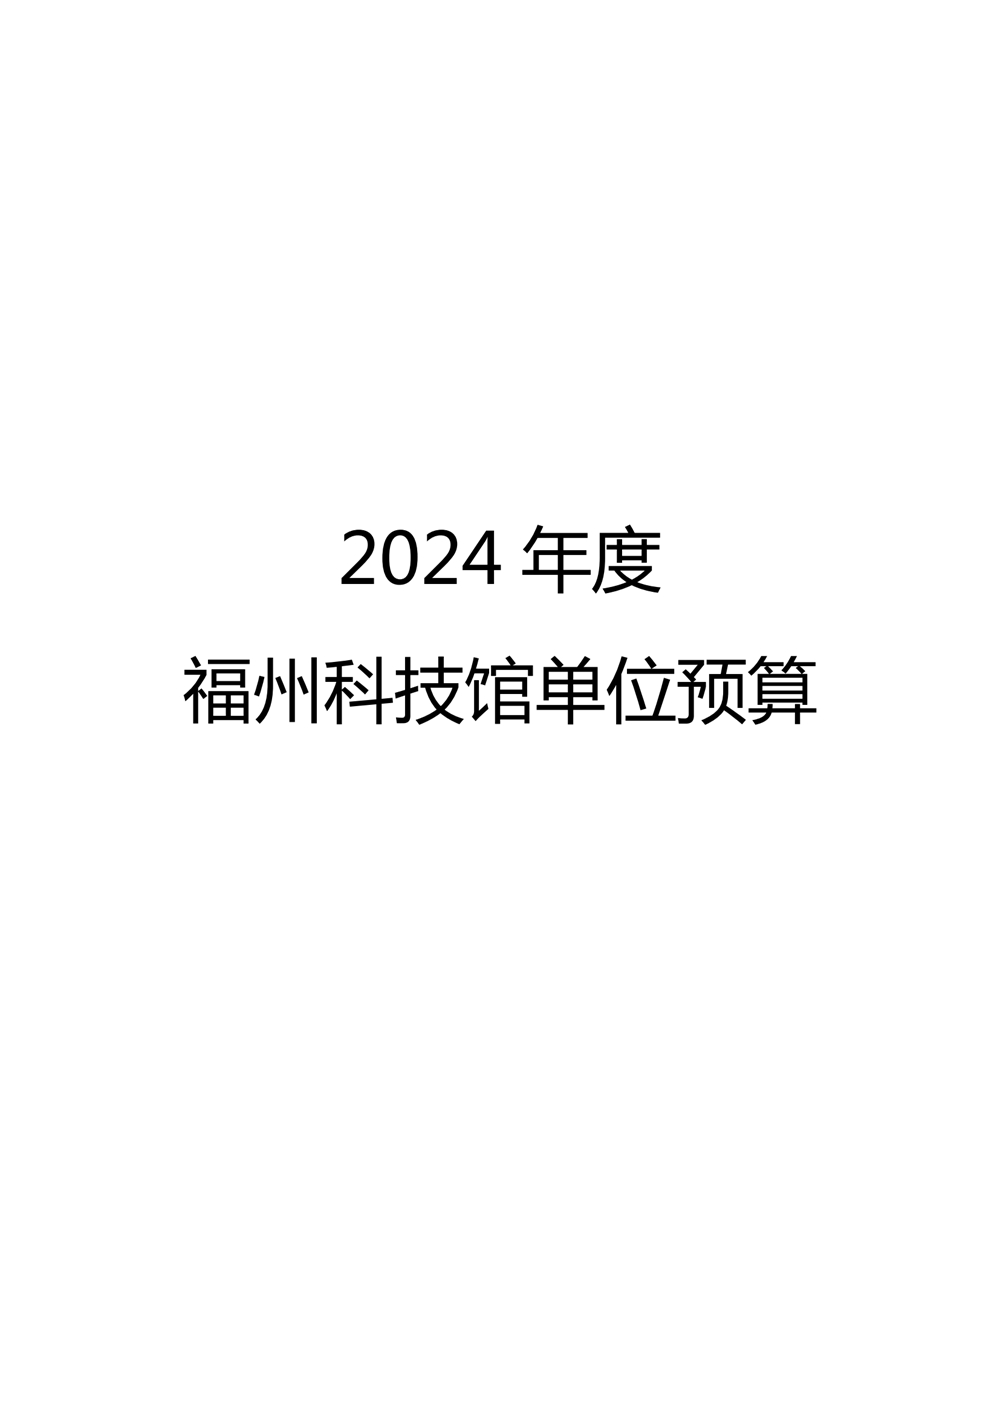 2024年度福州科技馆单位预算